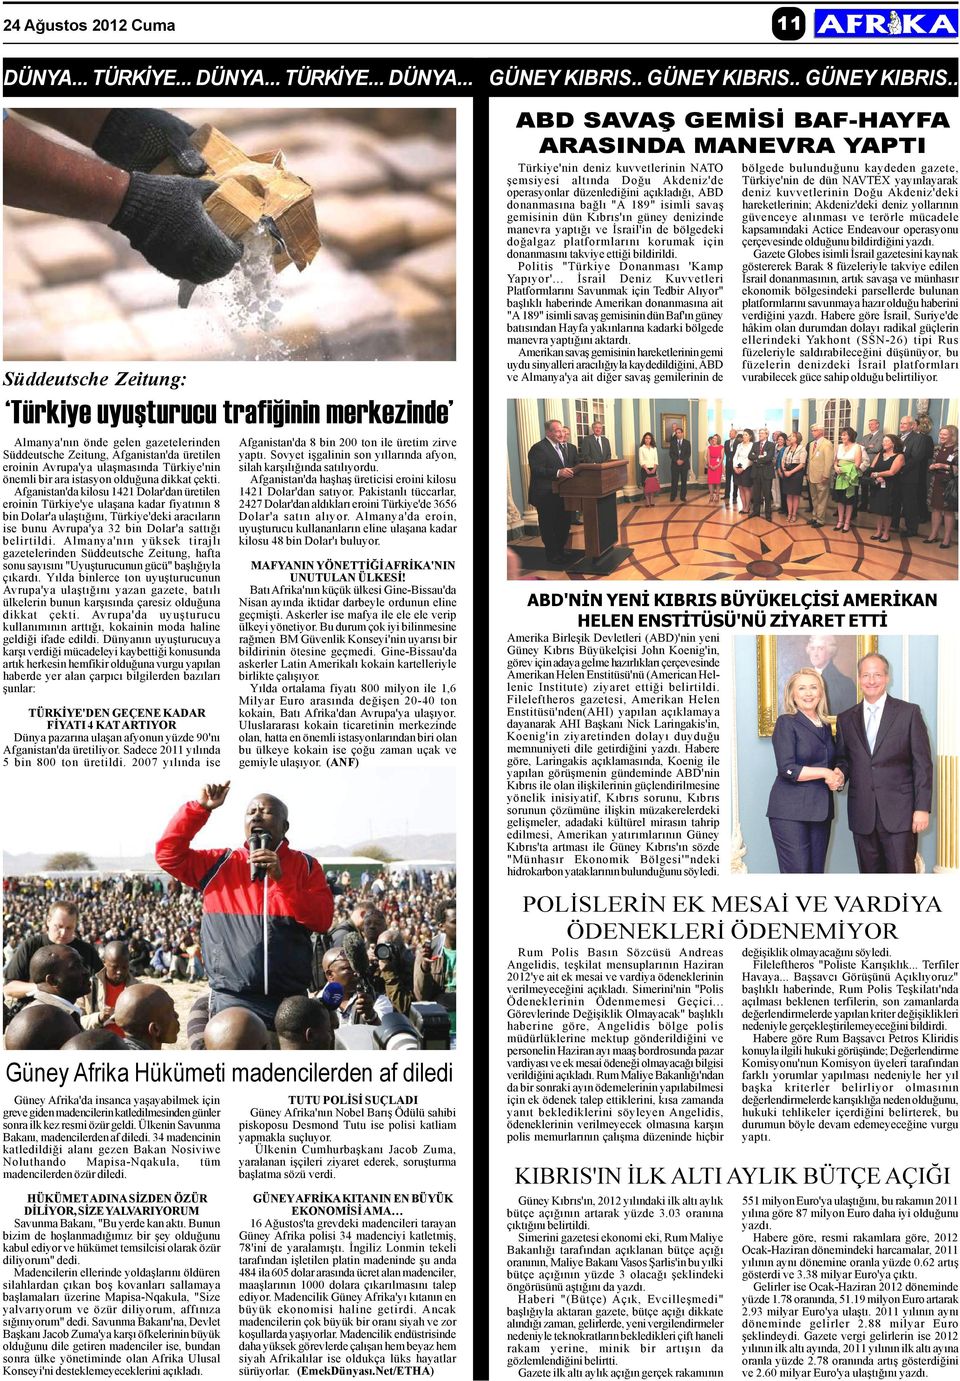 . Süddeutsche Zeitung: Türkiye uyuþturucu trafiðinin merkezinde Almanya'nýn önde gelen gazetelerinden Süddeutsche Zeitung, Afganistan'da üretilen eroinin Avrupa'ya ulaþmasýnda Türkiye'nin önemli bir